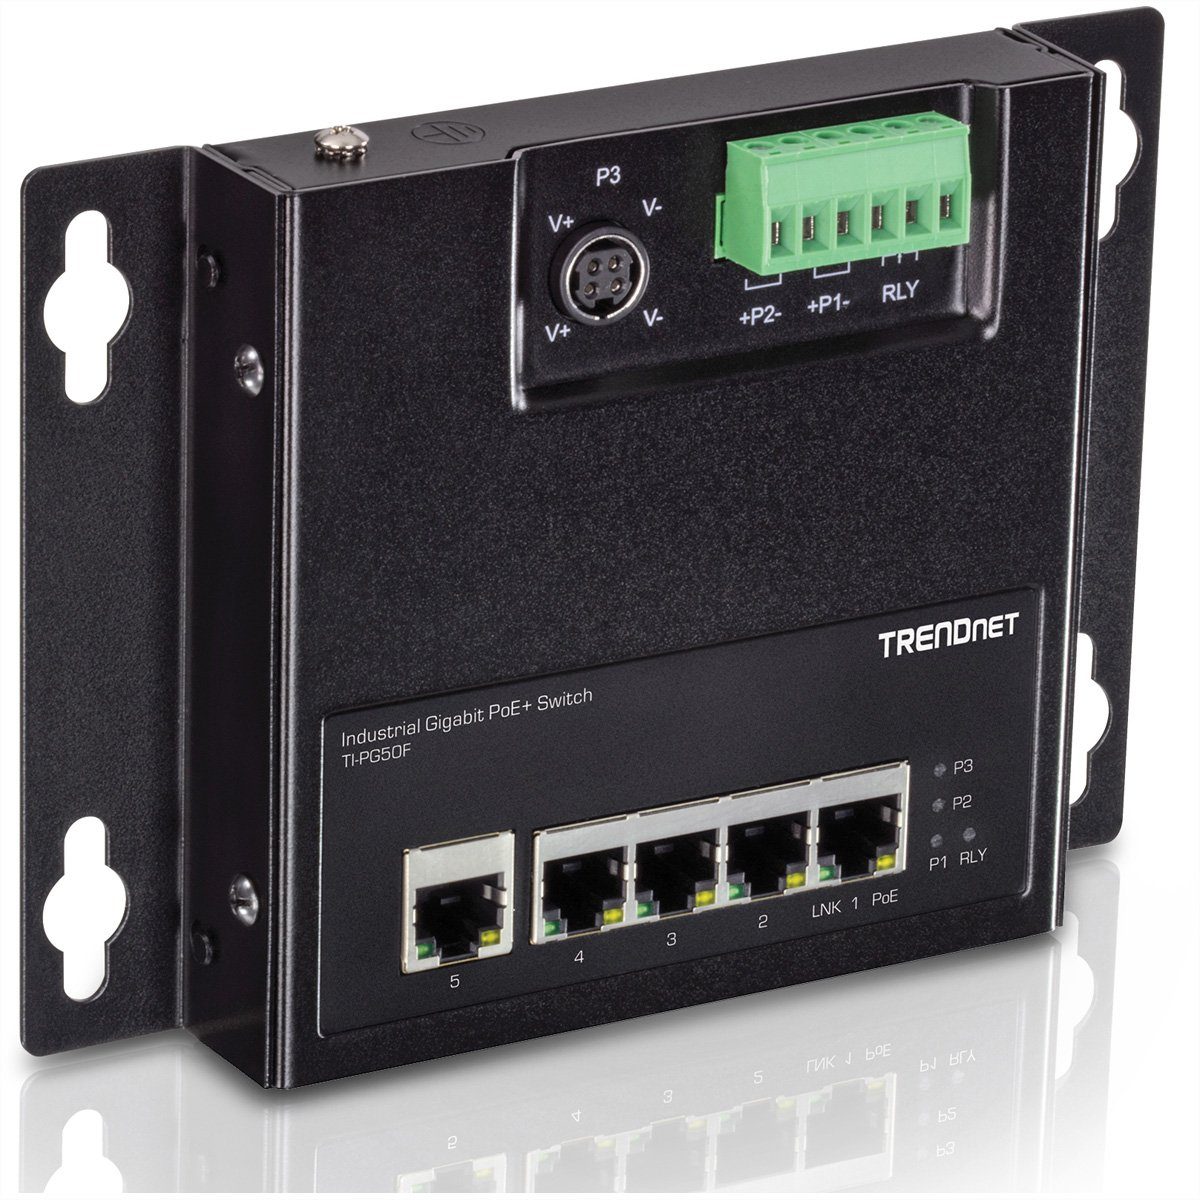 Trendnet TI-PG50F 5-Port Industrial PoE+ Gigabit Front Access Switch Netzwerk-Switch (wandmontierbar)